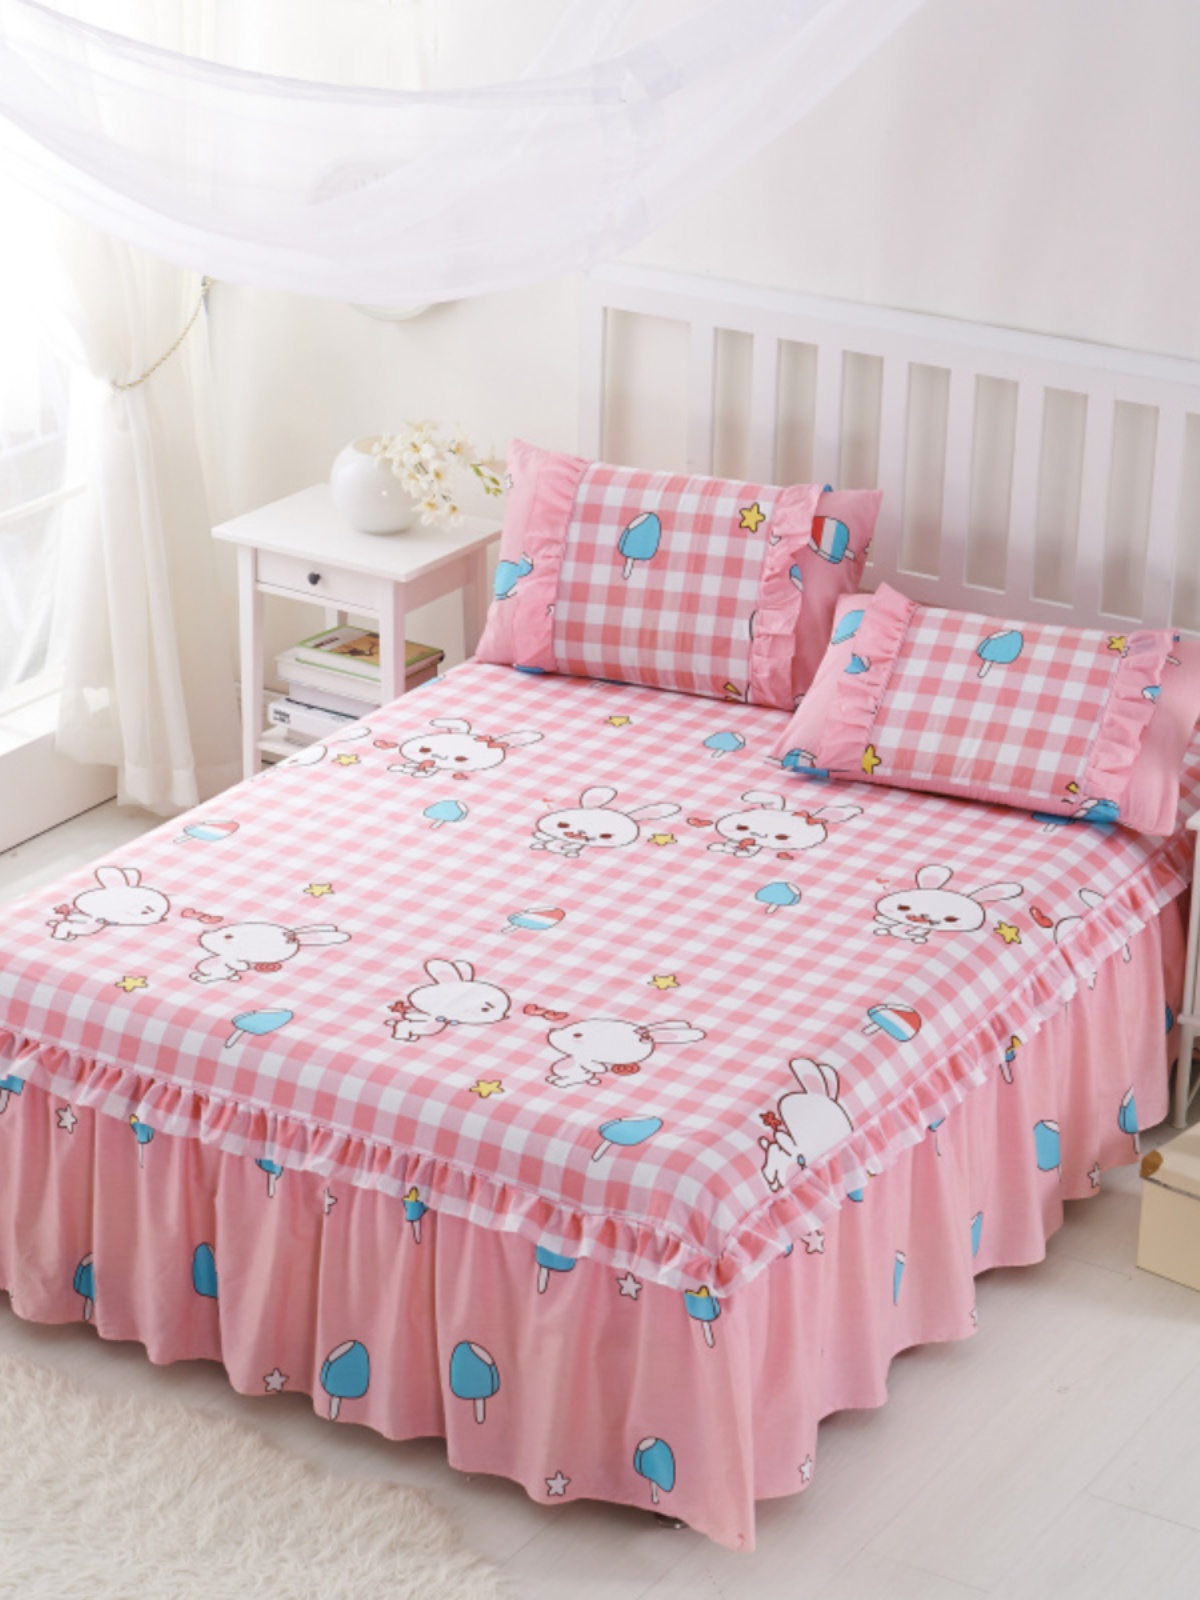 韩式卡通纯棉床罩夹棉儿童床裙单件全棉床裙加厚床盖1.2米1.5m1.8